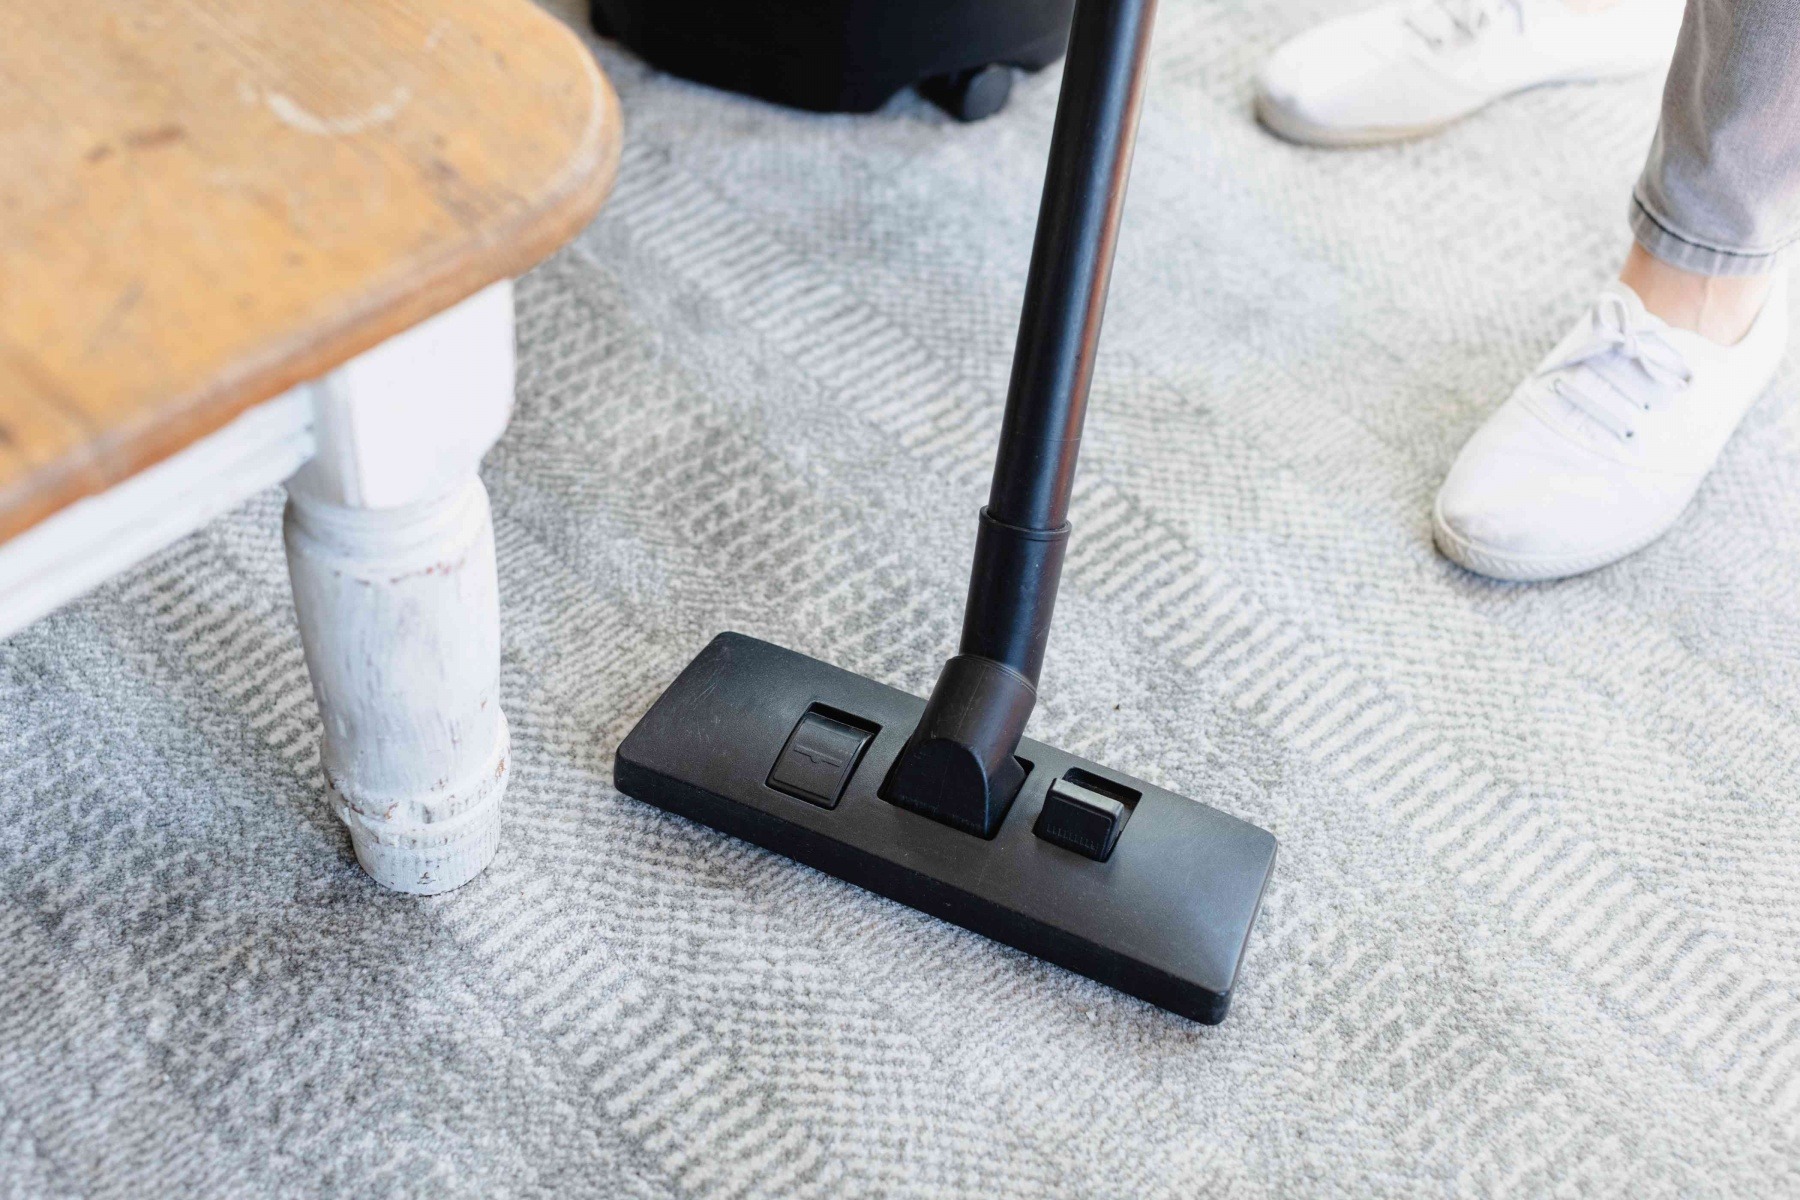  از بین بردن پرز فرش